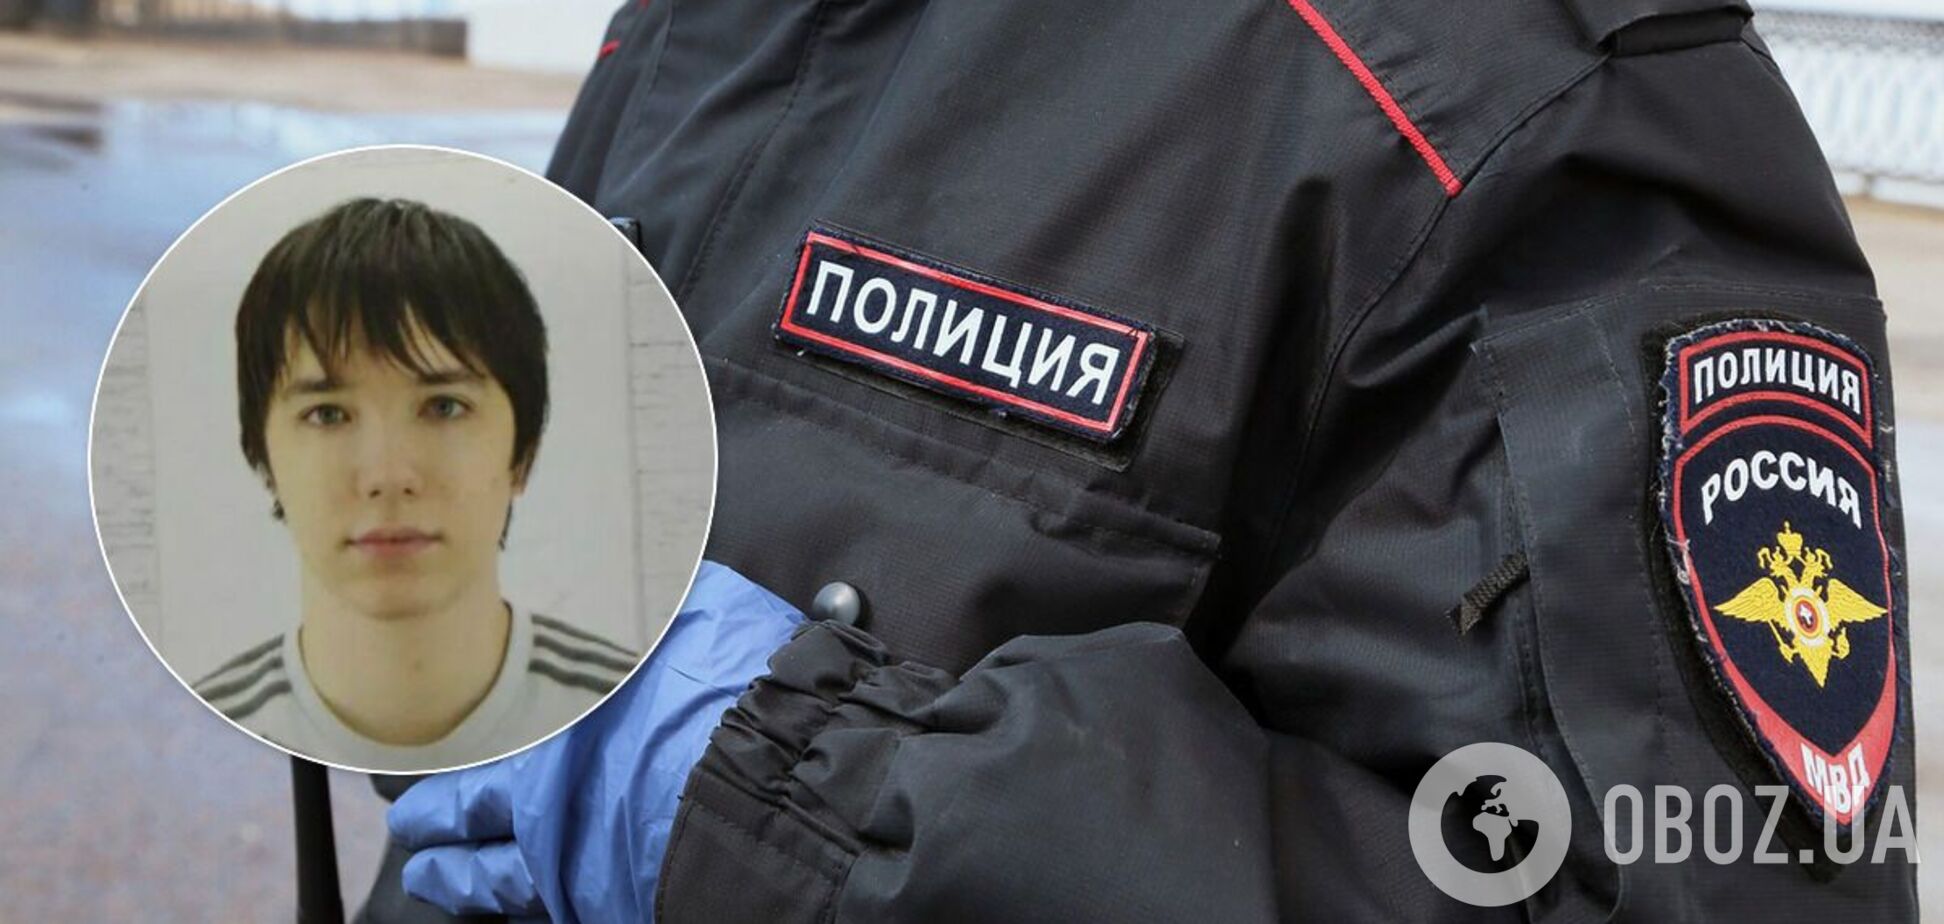 В России найден мертвым 18-летний парень, расстрелявший автобус. Фото 18+